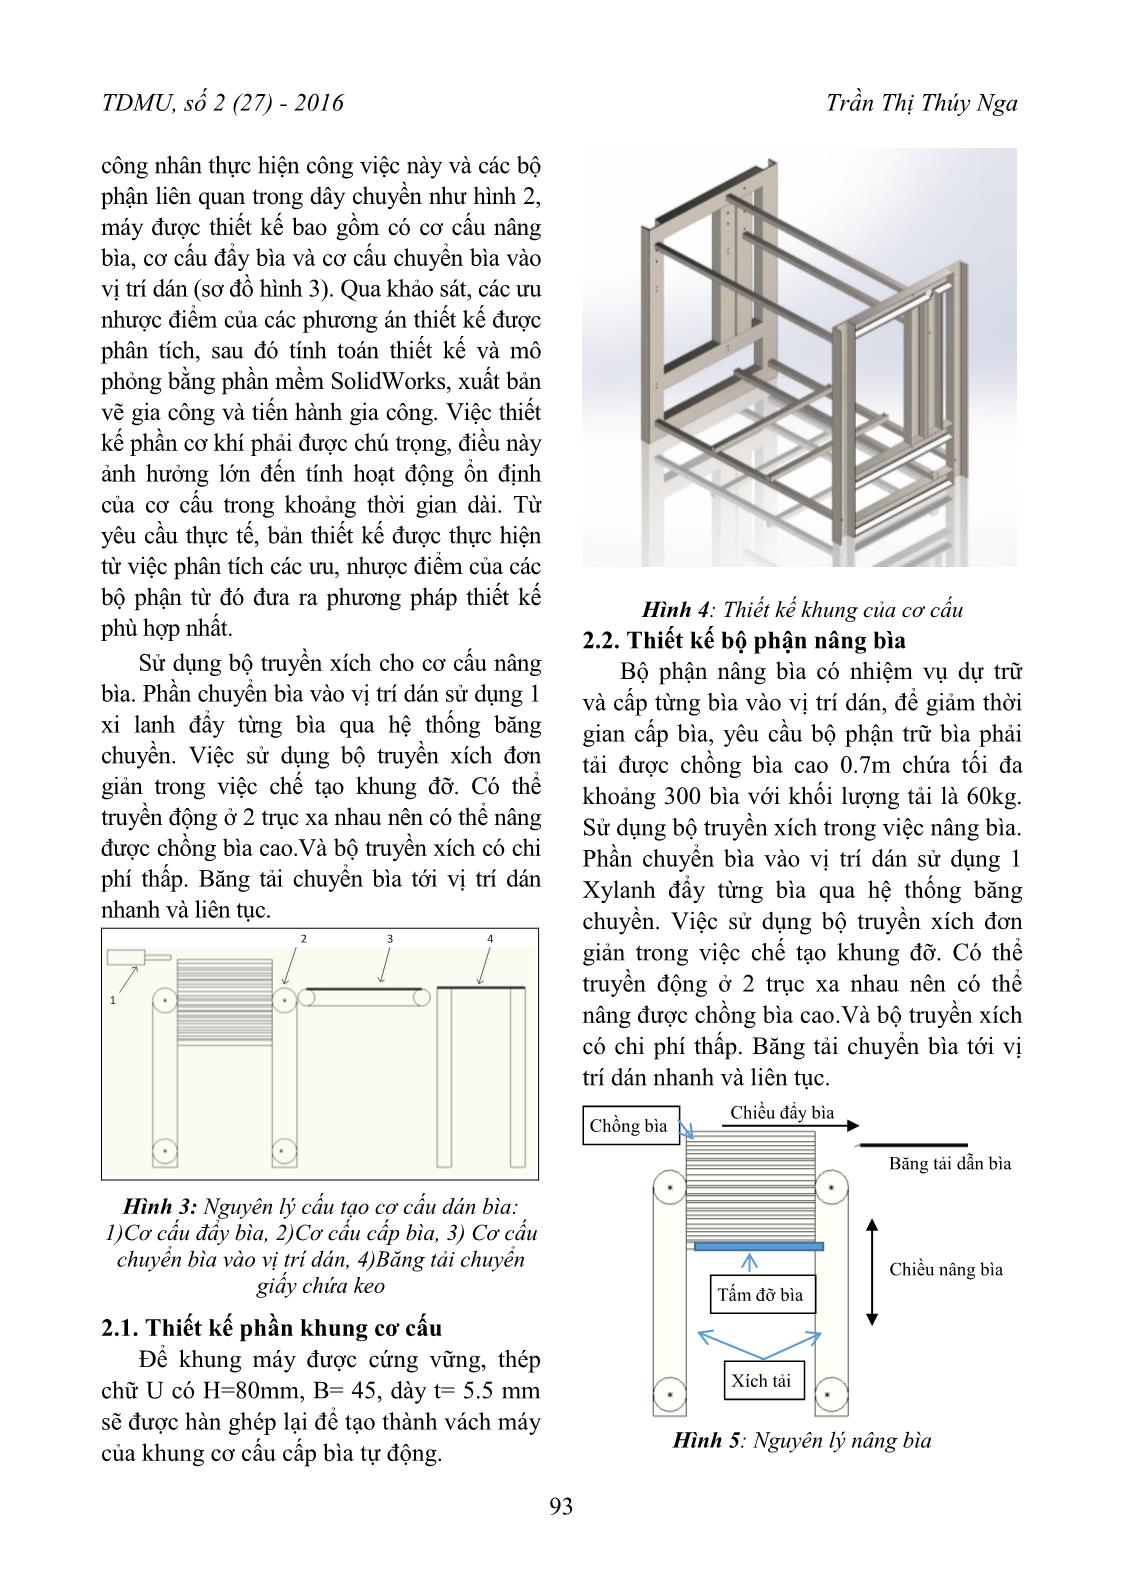 Thiết kế và chế tạo cơ cấu cấp bìa giấy tự động trang 2